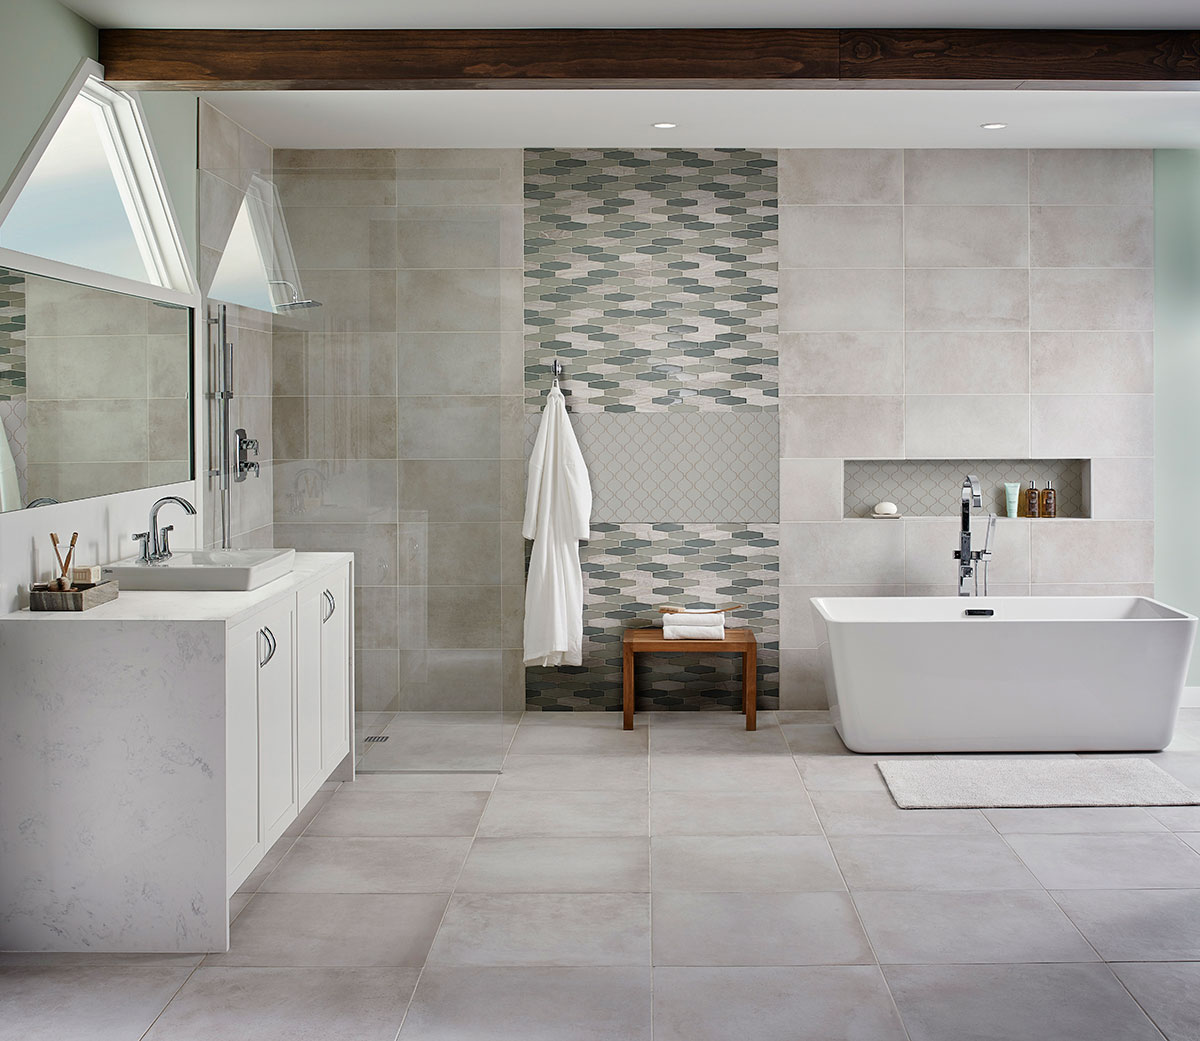 Gray Glossy Arabesque Tile backsplash in bathroom